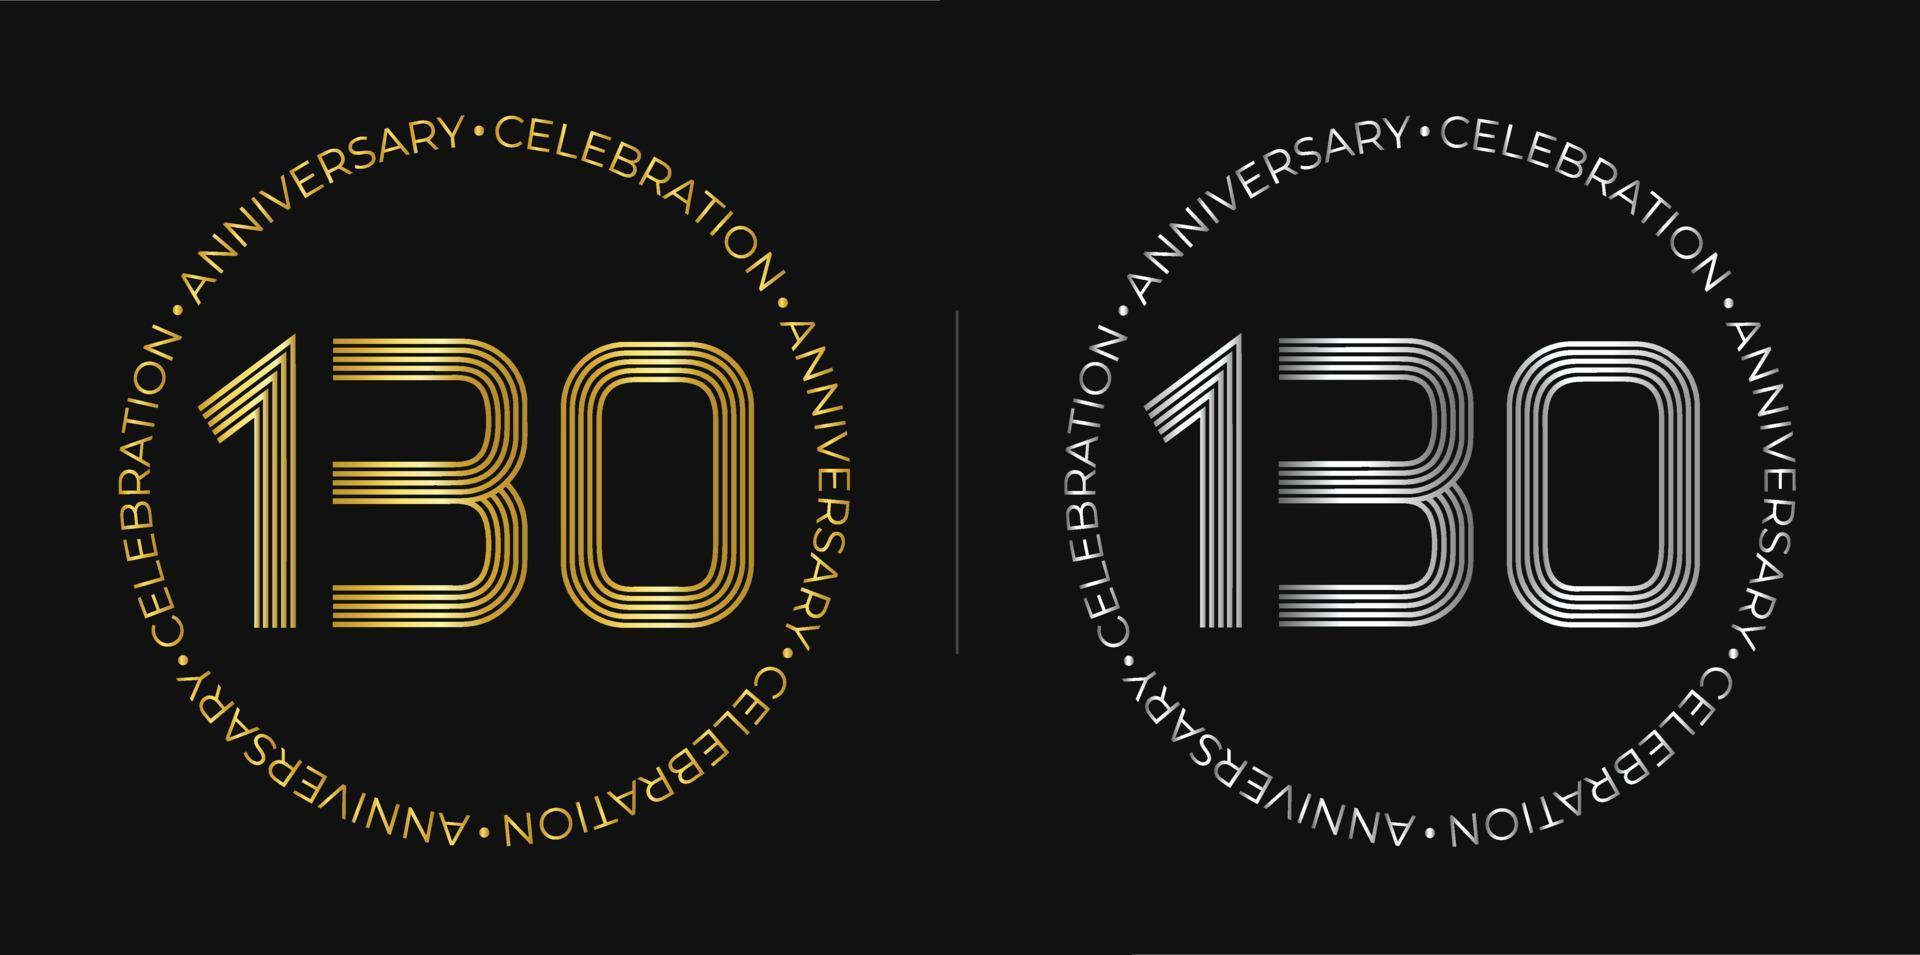 130e anniversaire. bannière de célébration d'anniversaire de cent trente ans aux couleurs dorées et argentées. logo circulaire avec un design original de chiffres aux lignes élégantes. vecteur